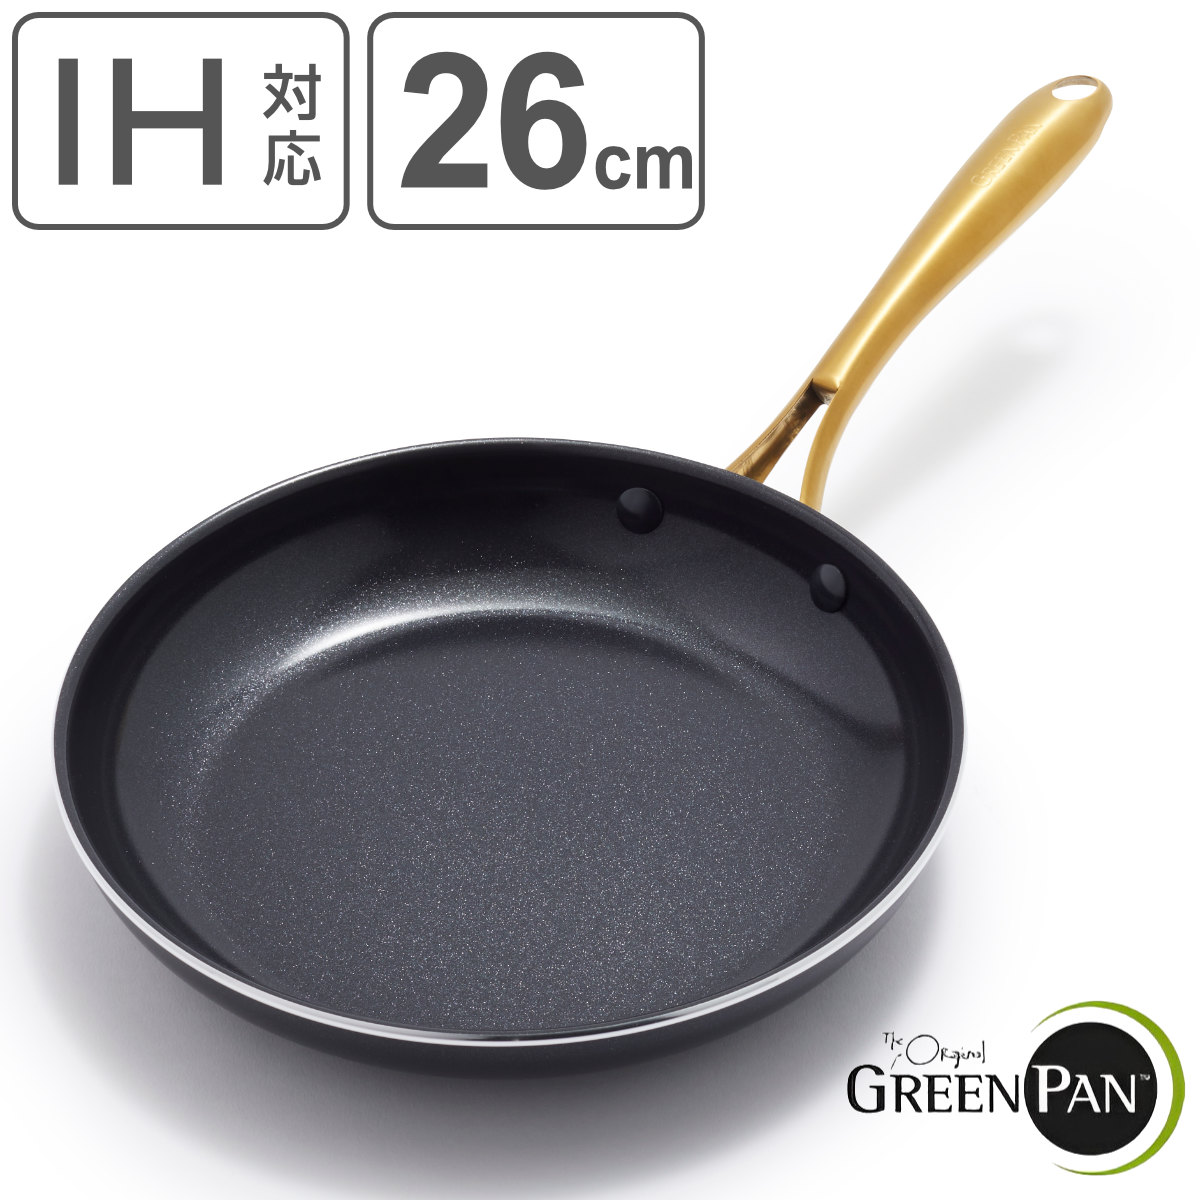 GREEN PAN フライパン 26cm IH対応 ストゥディオ